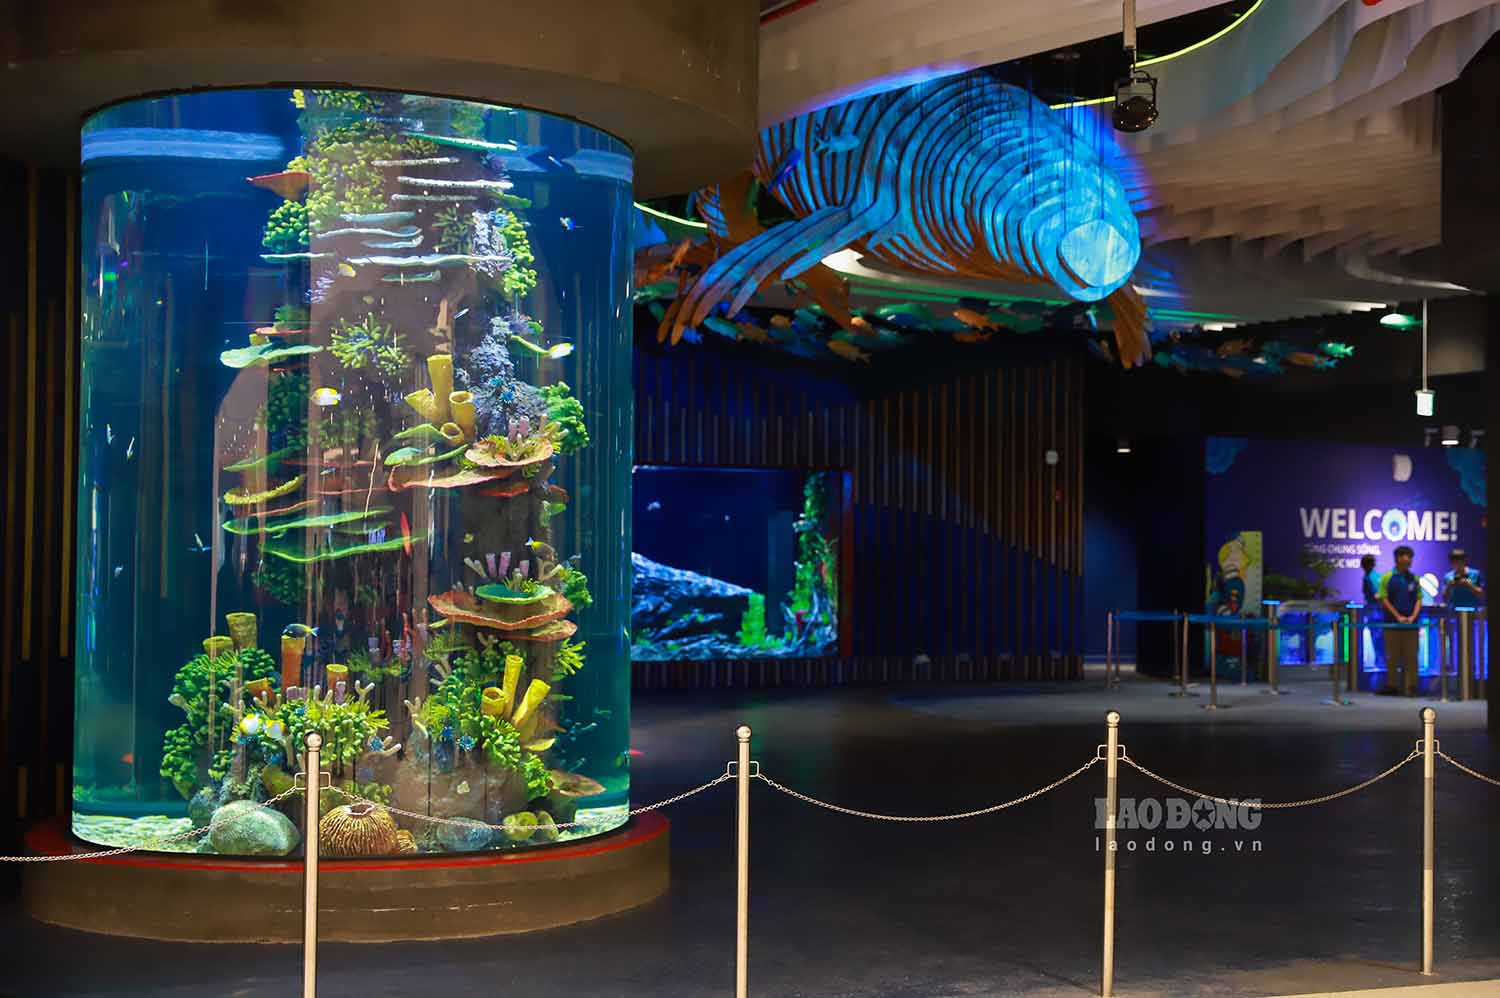 Từ tầng hầm B1 đi vào sẽ là khu vực Thủy cung LOTTE World Aquarium Hanoi. Đây cũng là cơ sở nước ngoài đầu tiên của LOTTE World Aquarium Hàn Quốc. Nơi đây quy tụ 31.000 sinh vật biển thuộc hơn 400 loài, trong đó có cá mập, chim cánh cụt, hải cẩu và sư tử biển.